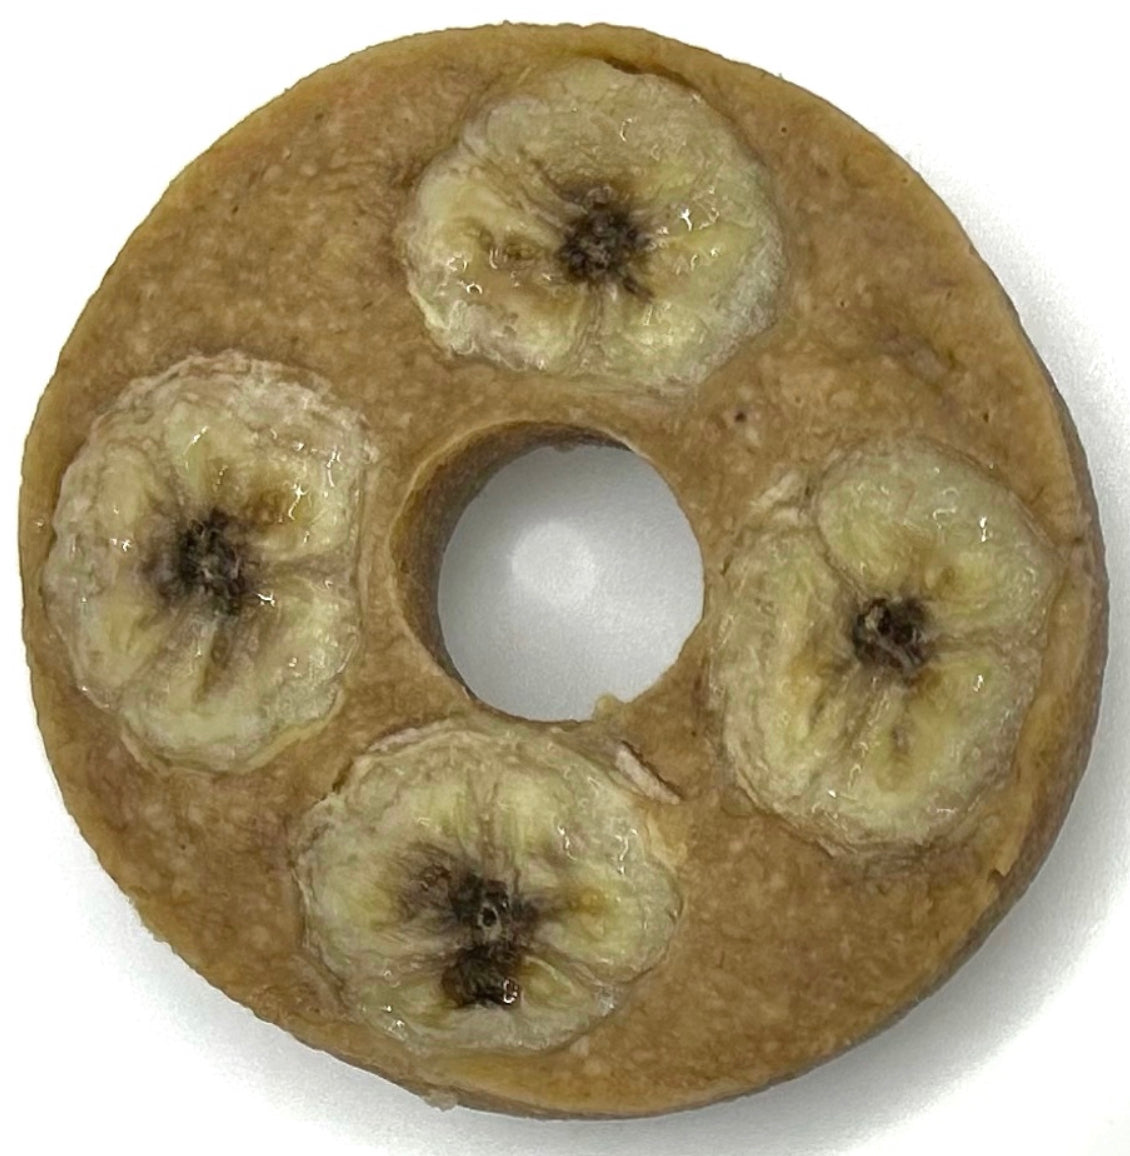 superfood banana donuts